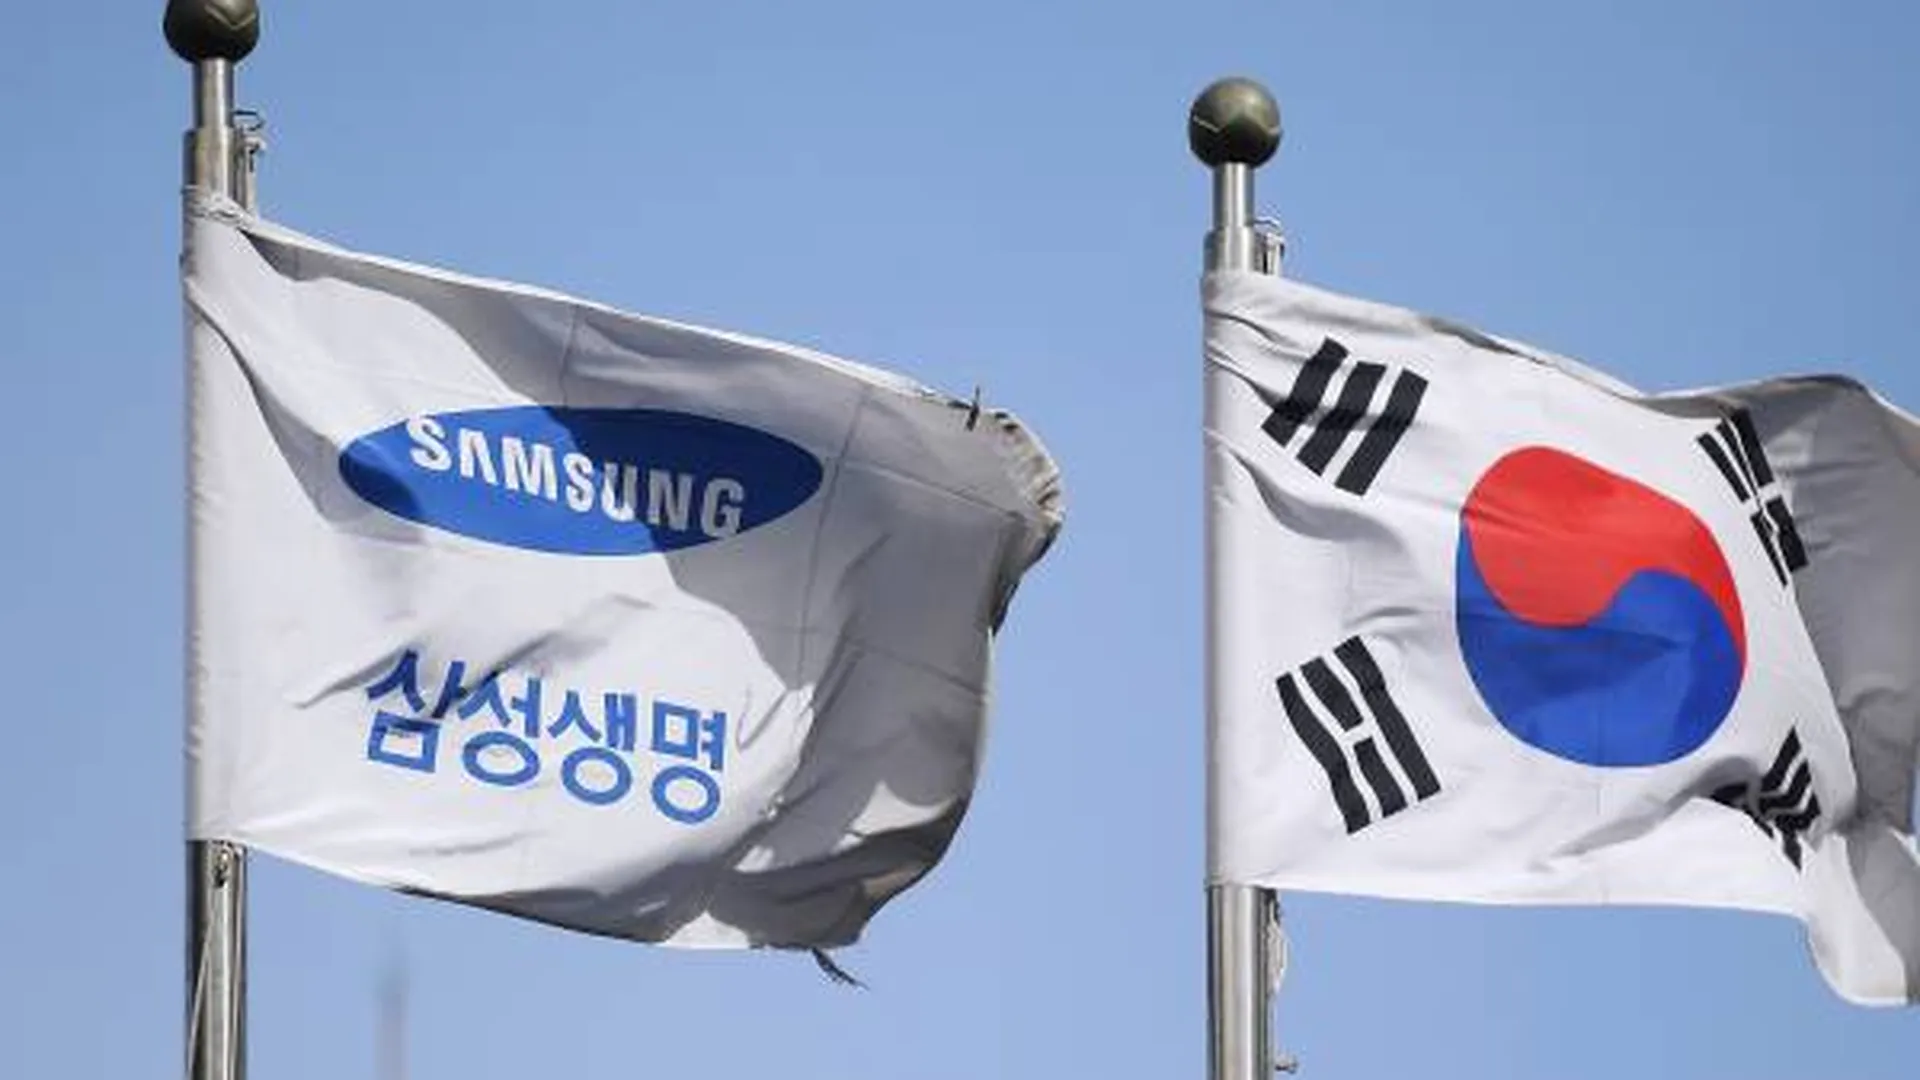 Вице-президента Samsung освободили из тюрьмы условно-досрочно спустя 7 месяцев